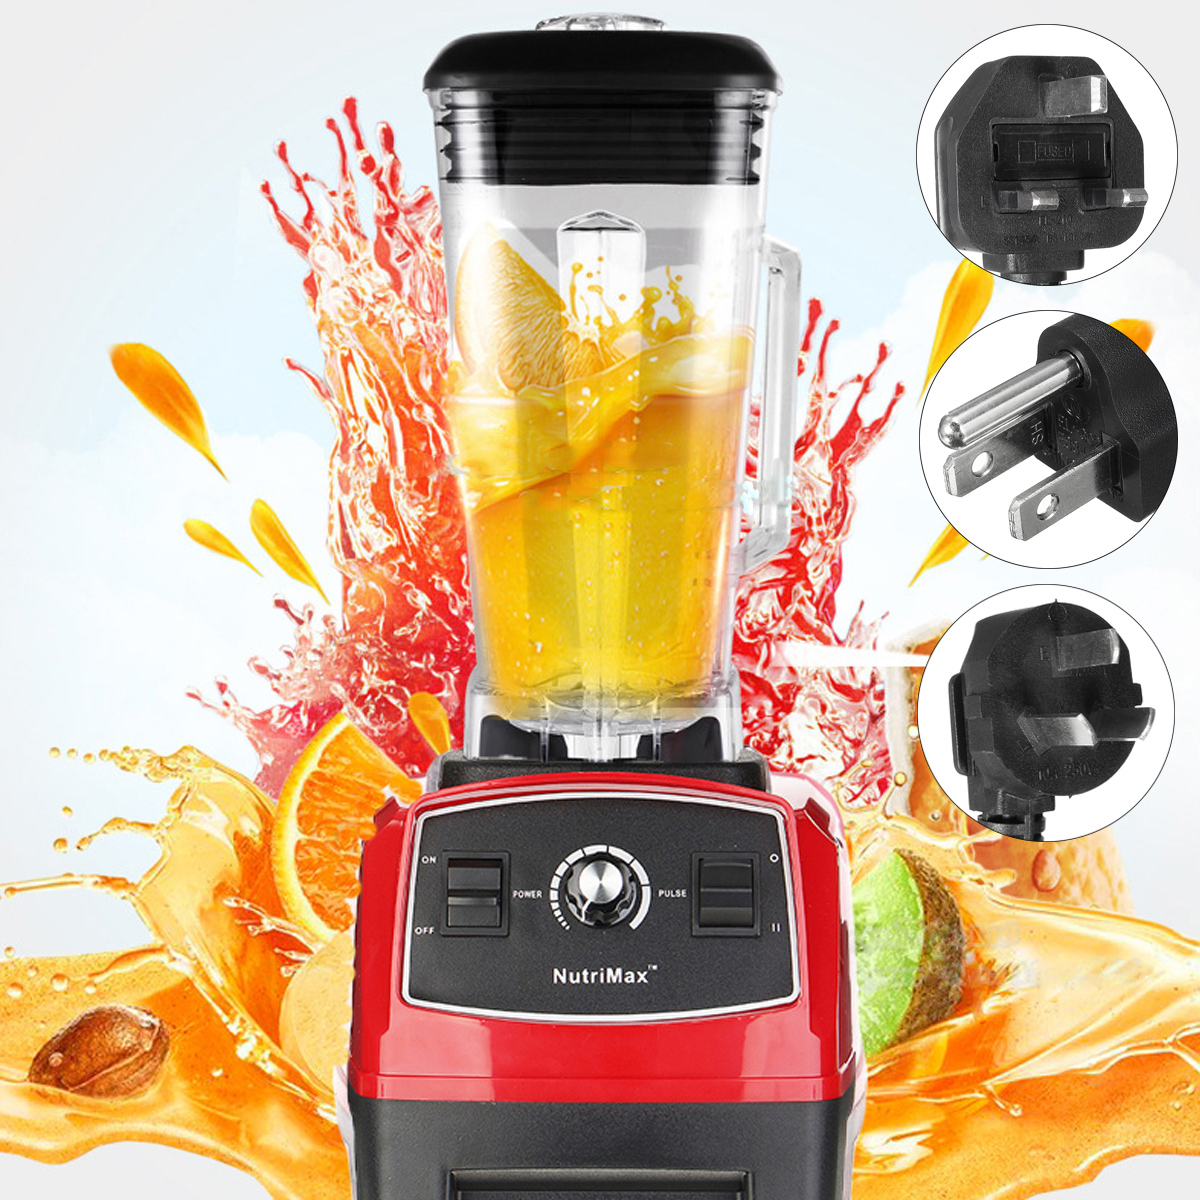 110-240V 2200W Mixer Blender Fruit Mix Juicer Smoothie Home ...